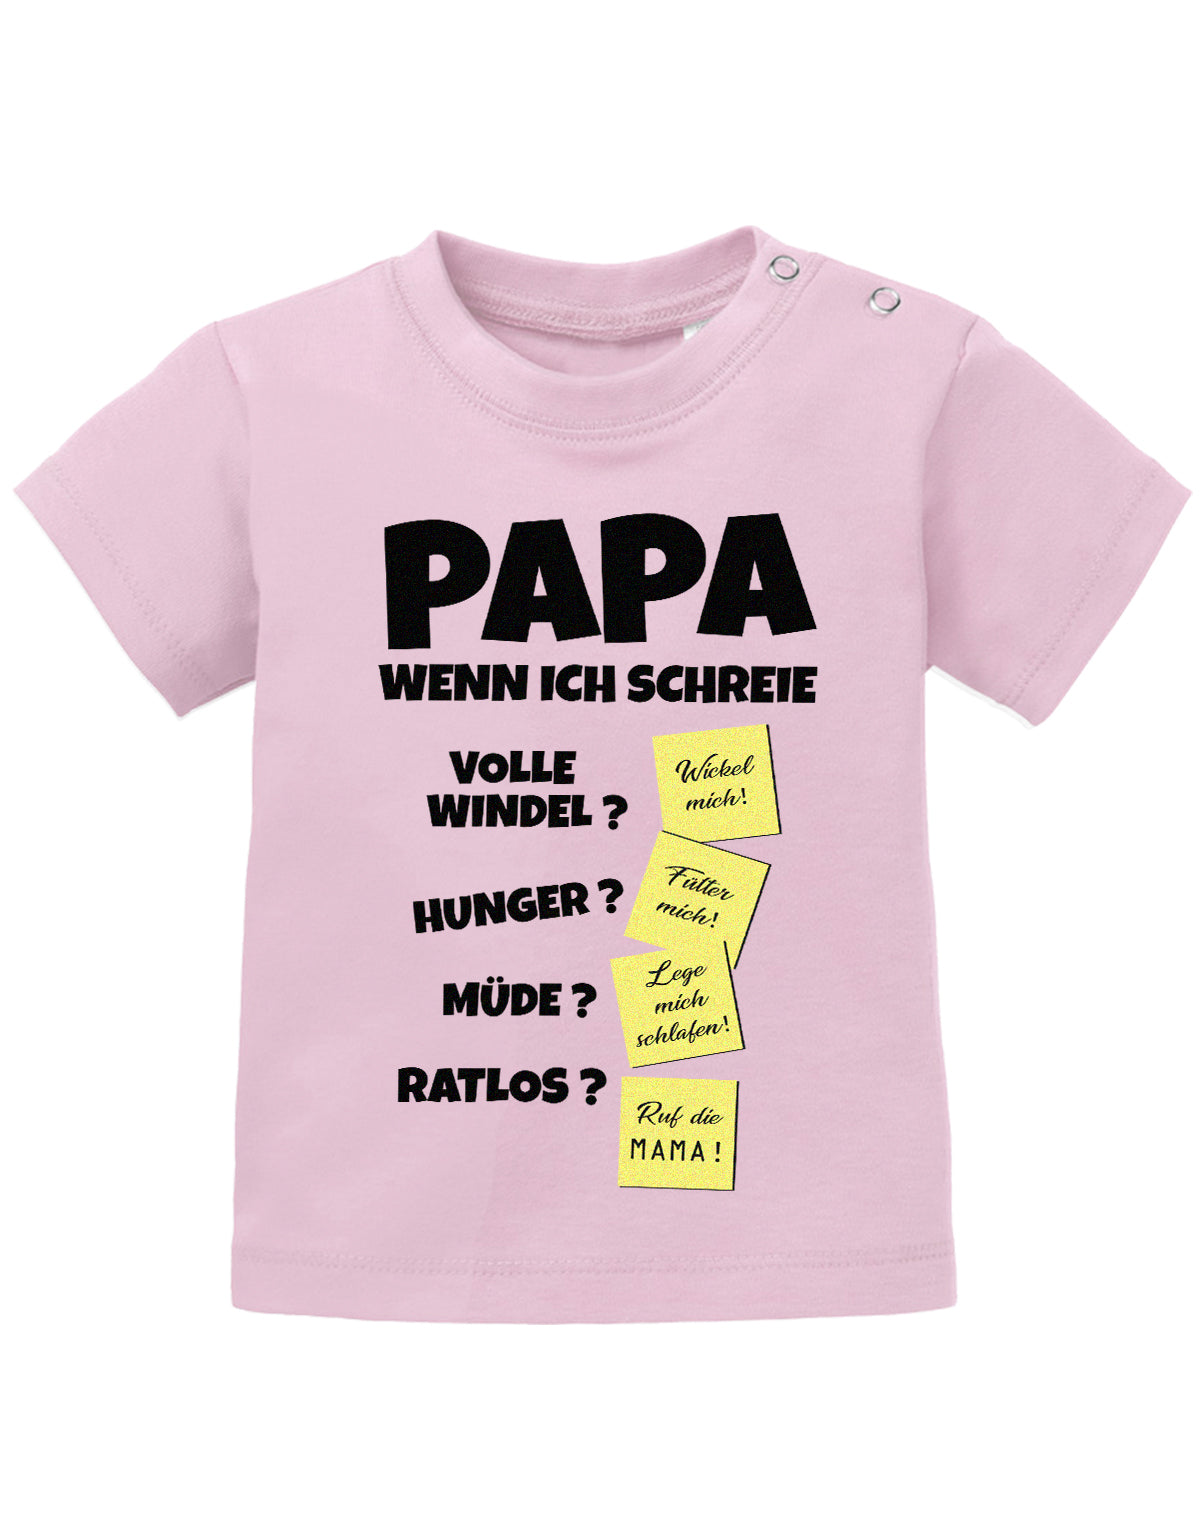 Lustiges süßes Sprüche Baby Shirt Papa wenn ich schreie - Notizen Lösungen. Rosa